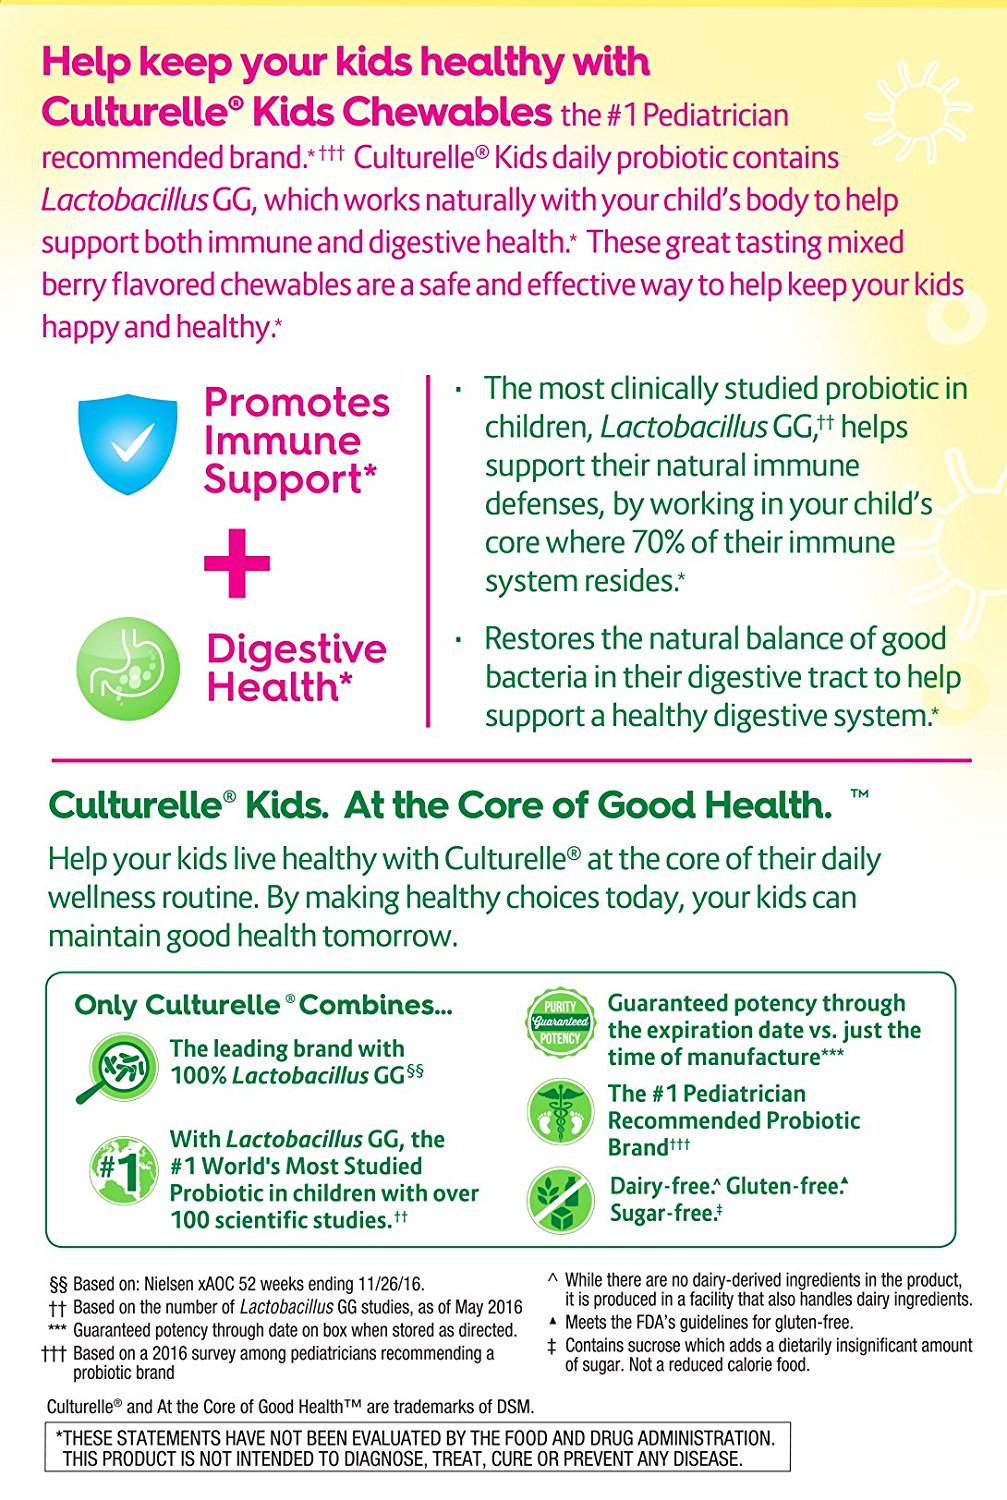  Culturelle Kids Chewables Daily Probiotic Formula